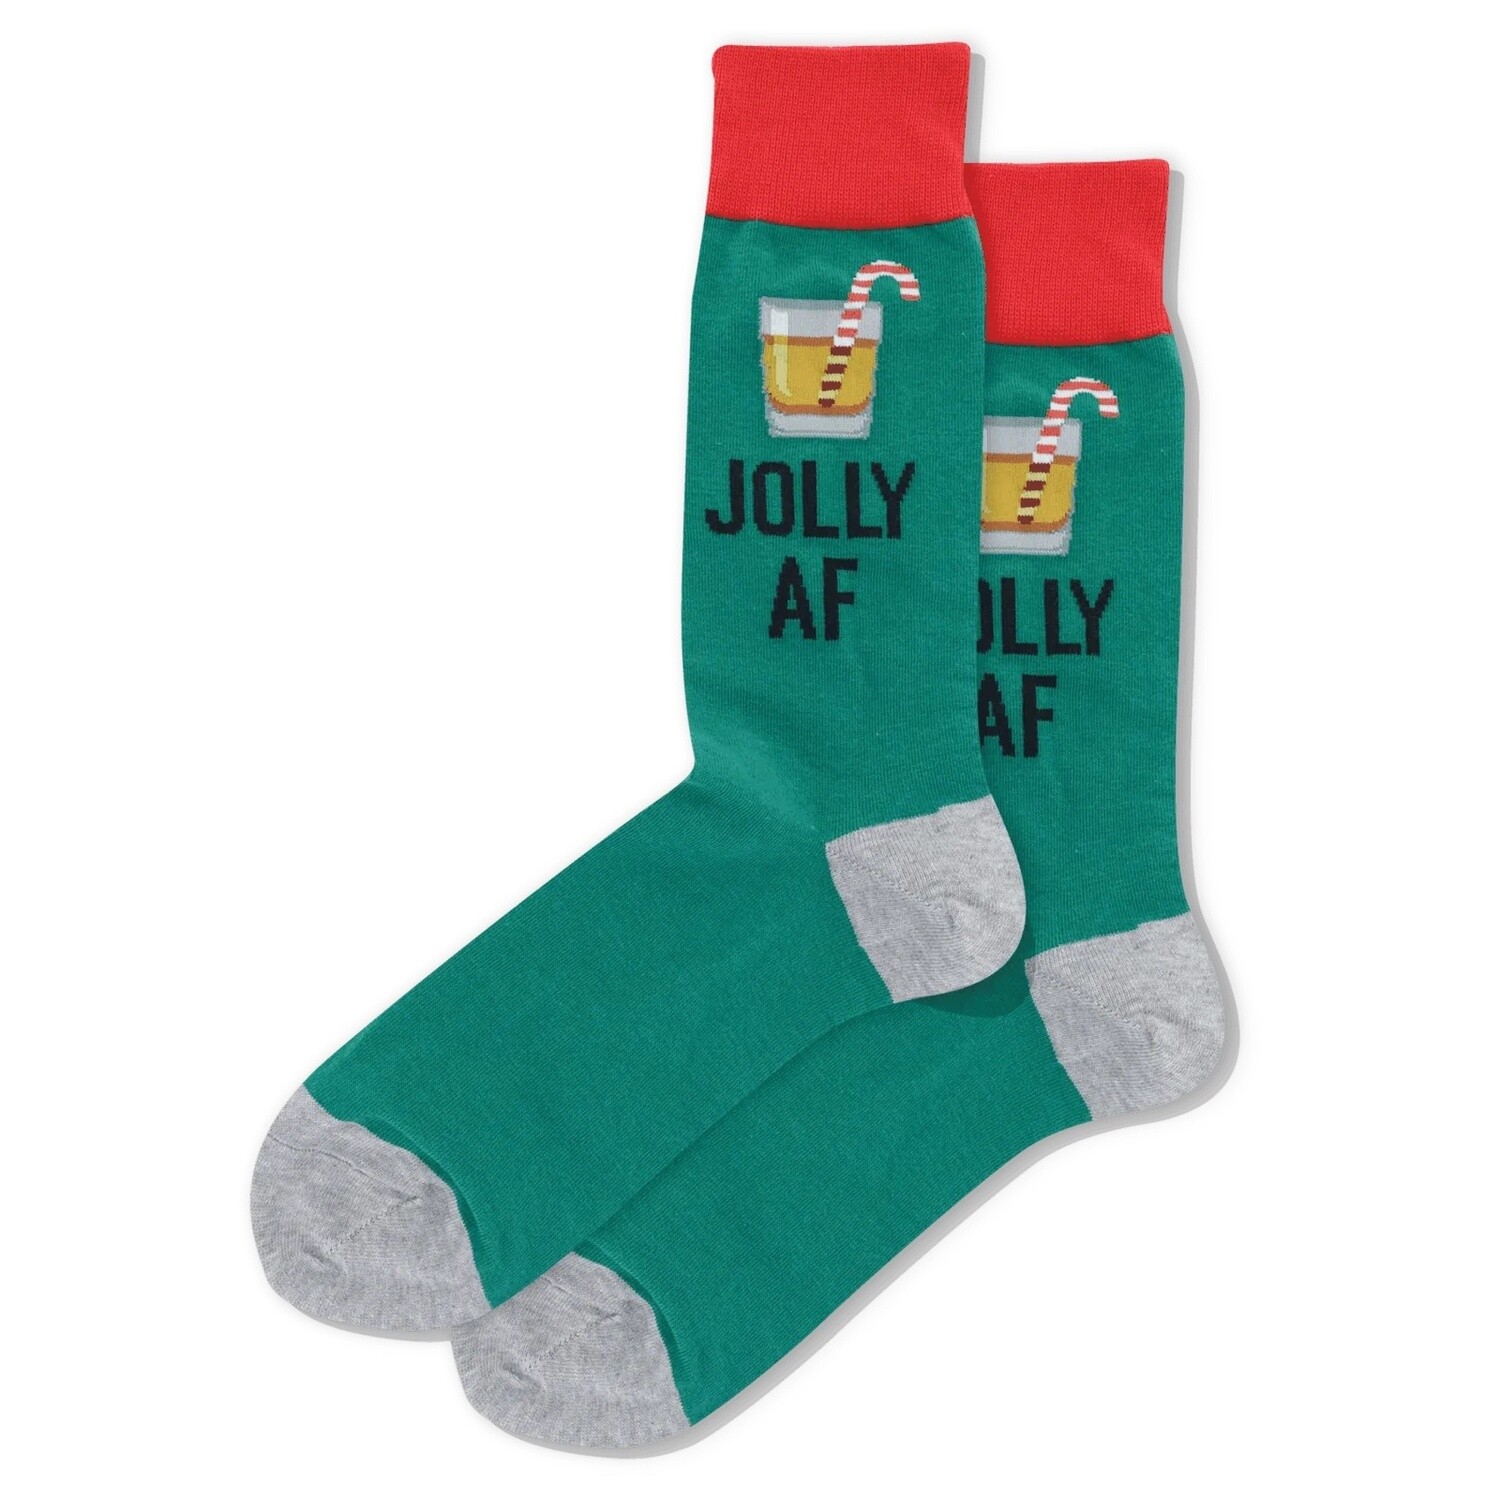 Jolly AF Forest Green Men's Socks